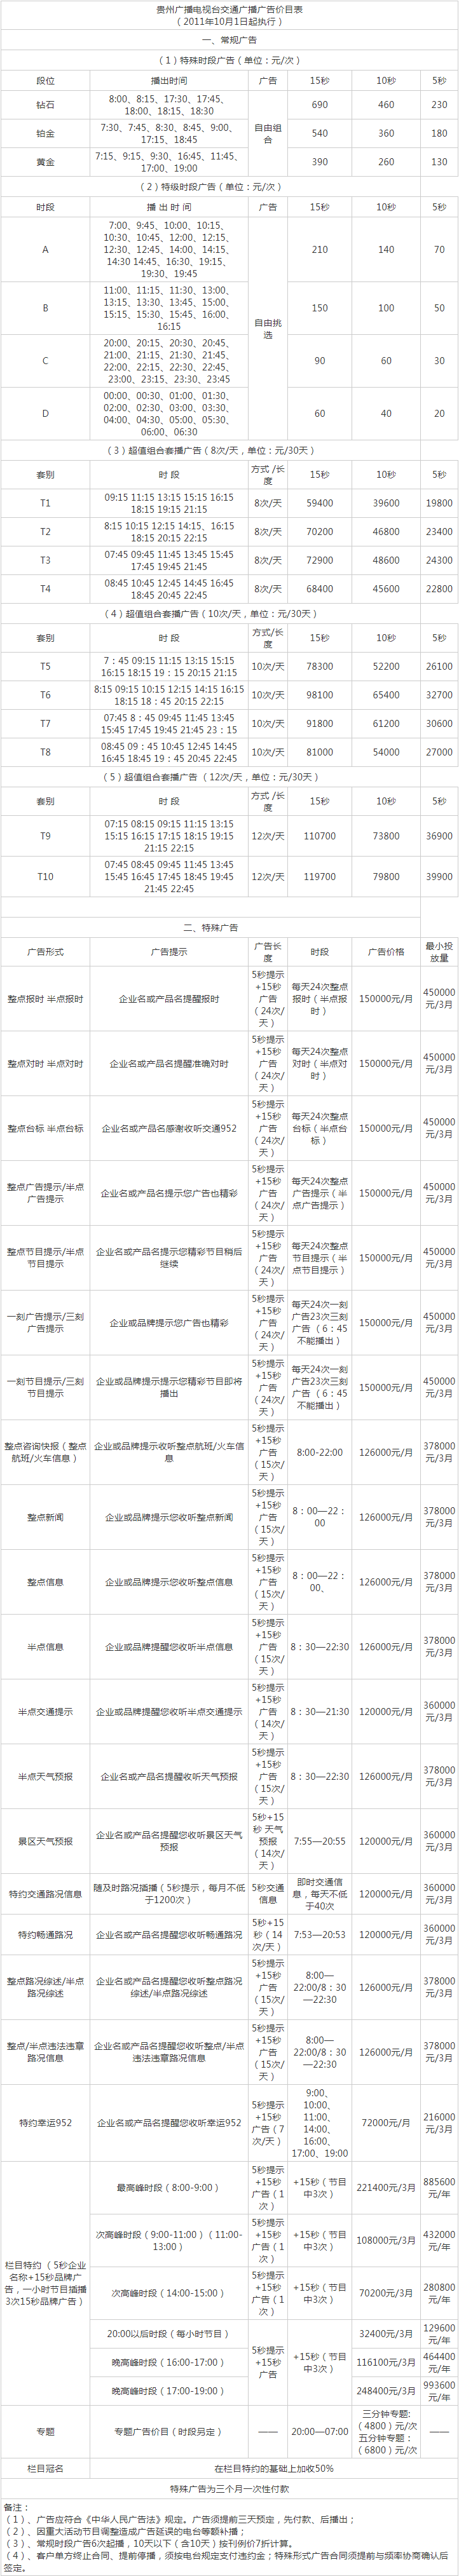 2012贵州人民广播电台交通广播 FM95.2广告报价表.png